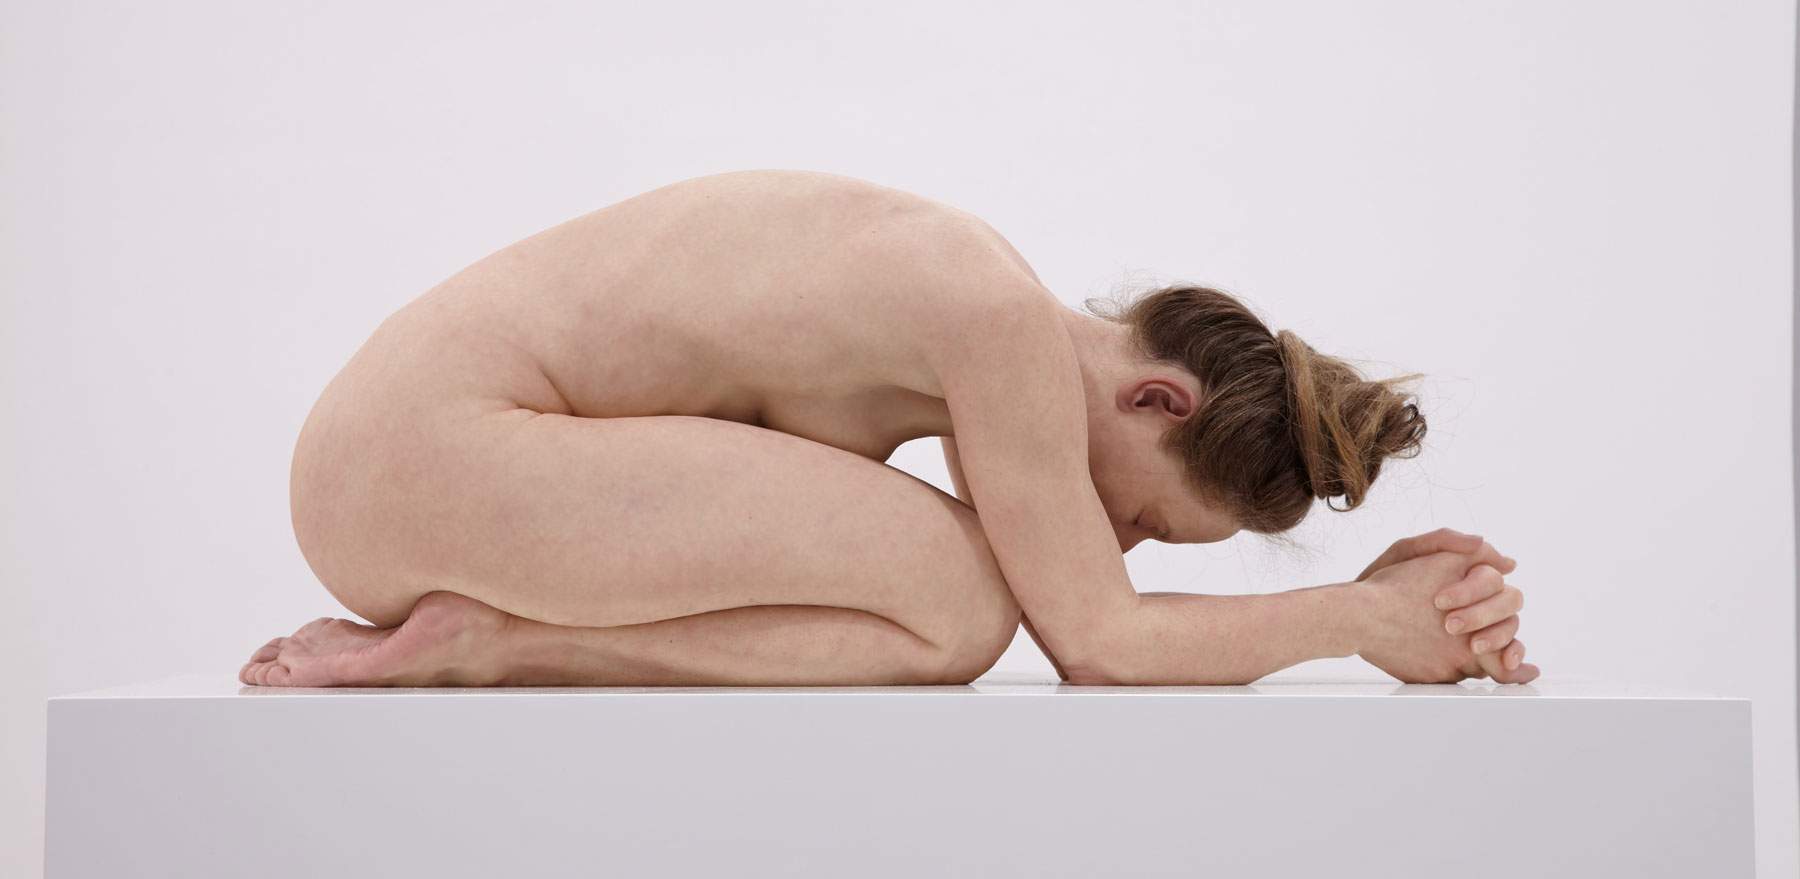 Questi corpi... non sono corpi, ma statue. In Belgio una grande mostra di scultura iperrealista